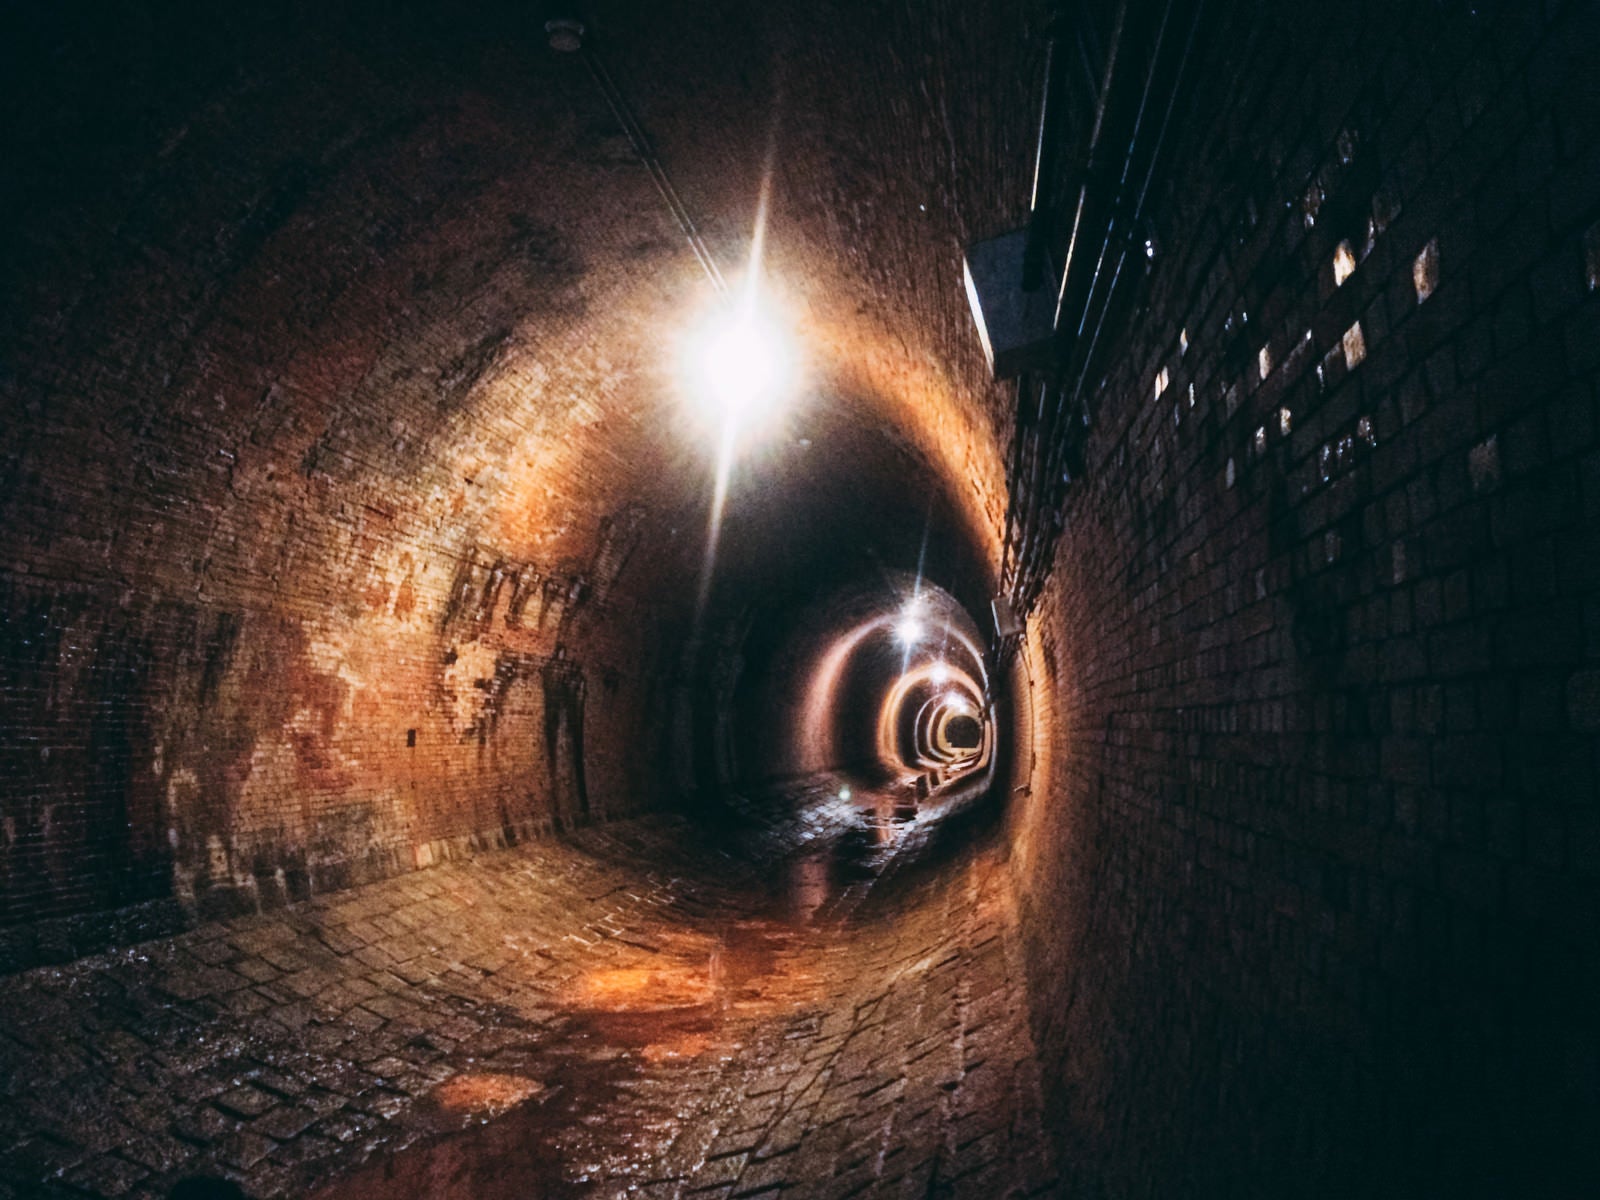 「奥から巨大なワニが襲ってきそうな湿ったトンネル内（湊川隧道）」の写真